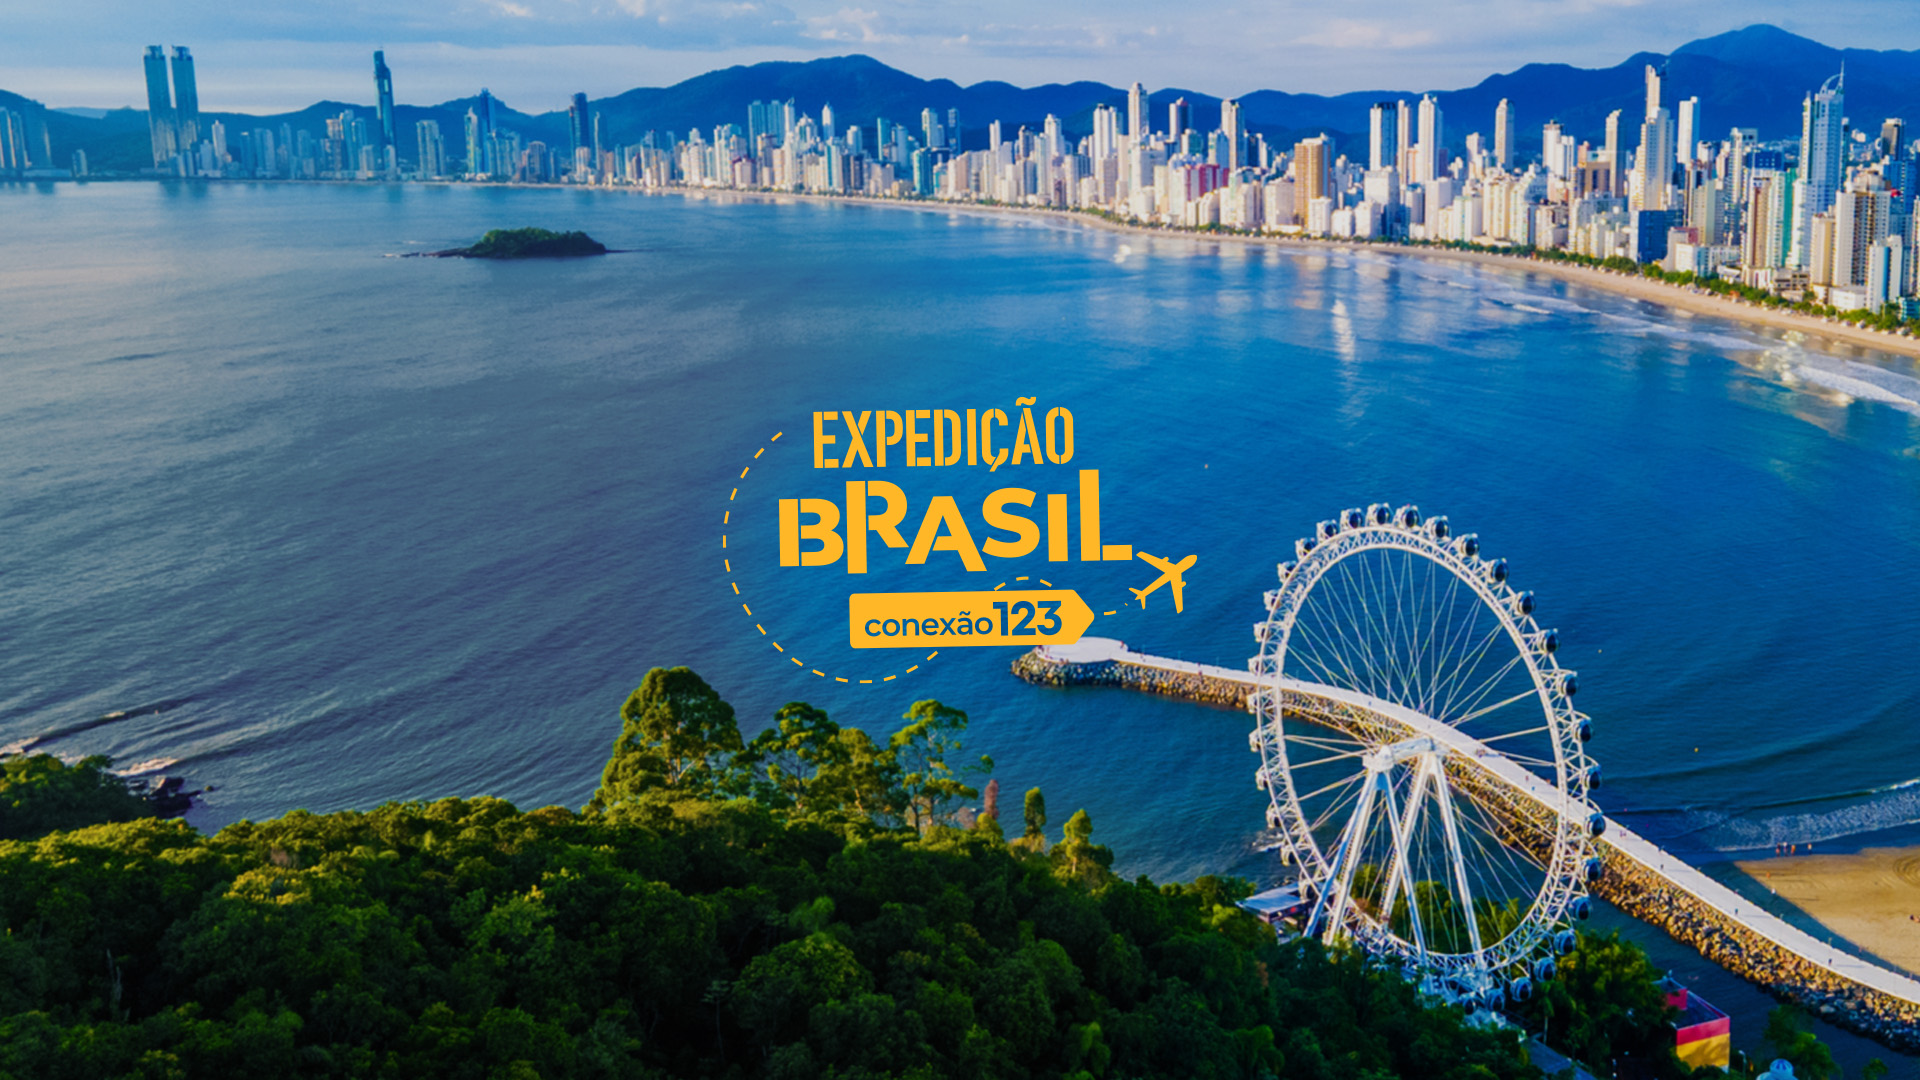 Conheça os principais pontos turísticos de Balneário Camboriú com o Conexão123 – Expedição Brasil